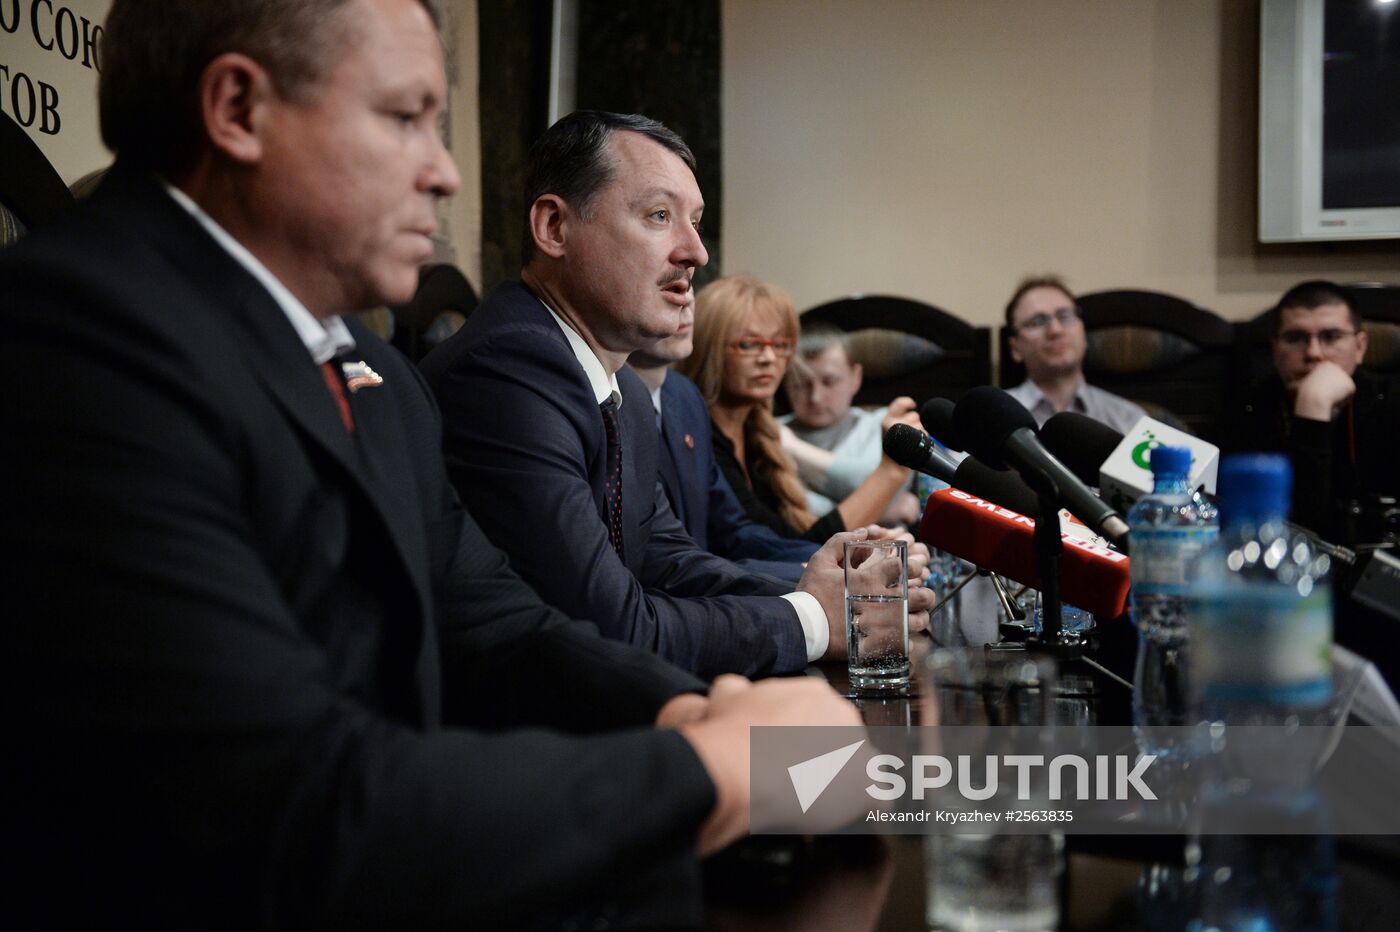 Press conference of former Donetsk Republic defense minister in Novosibirsk